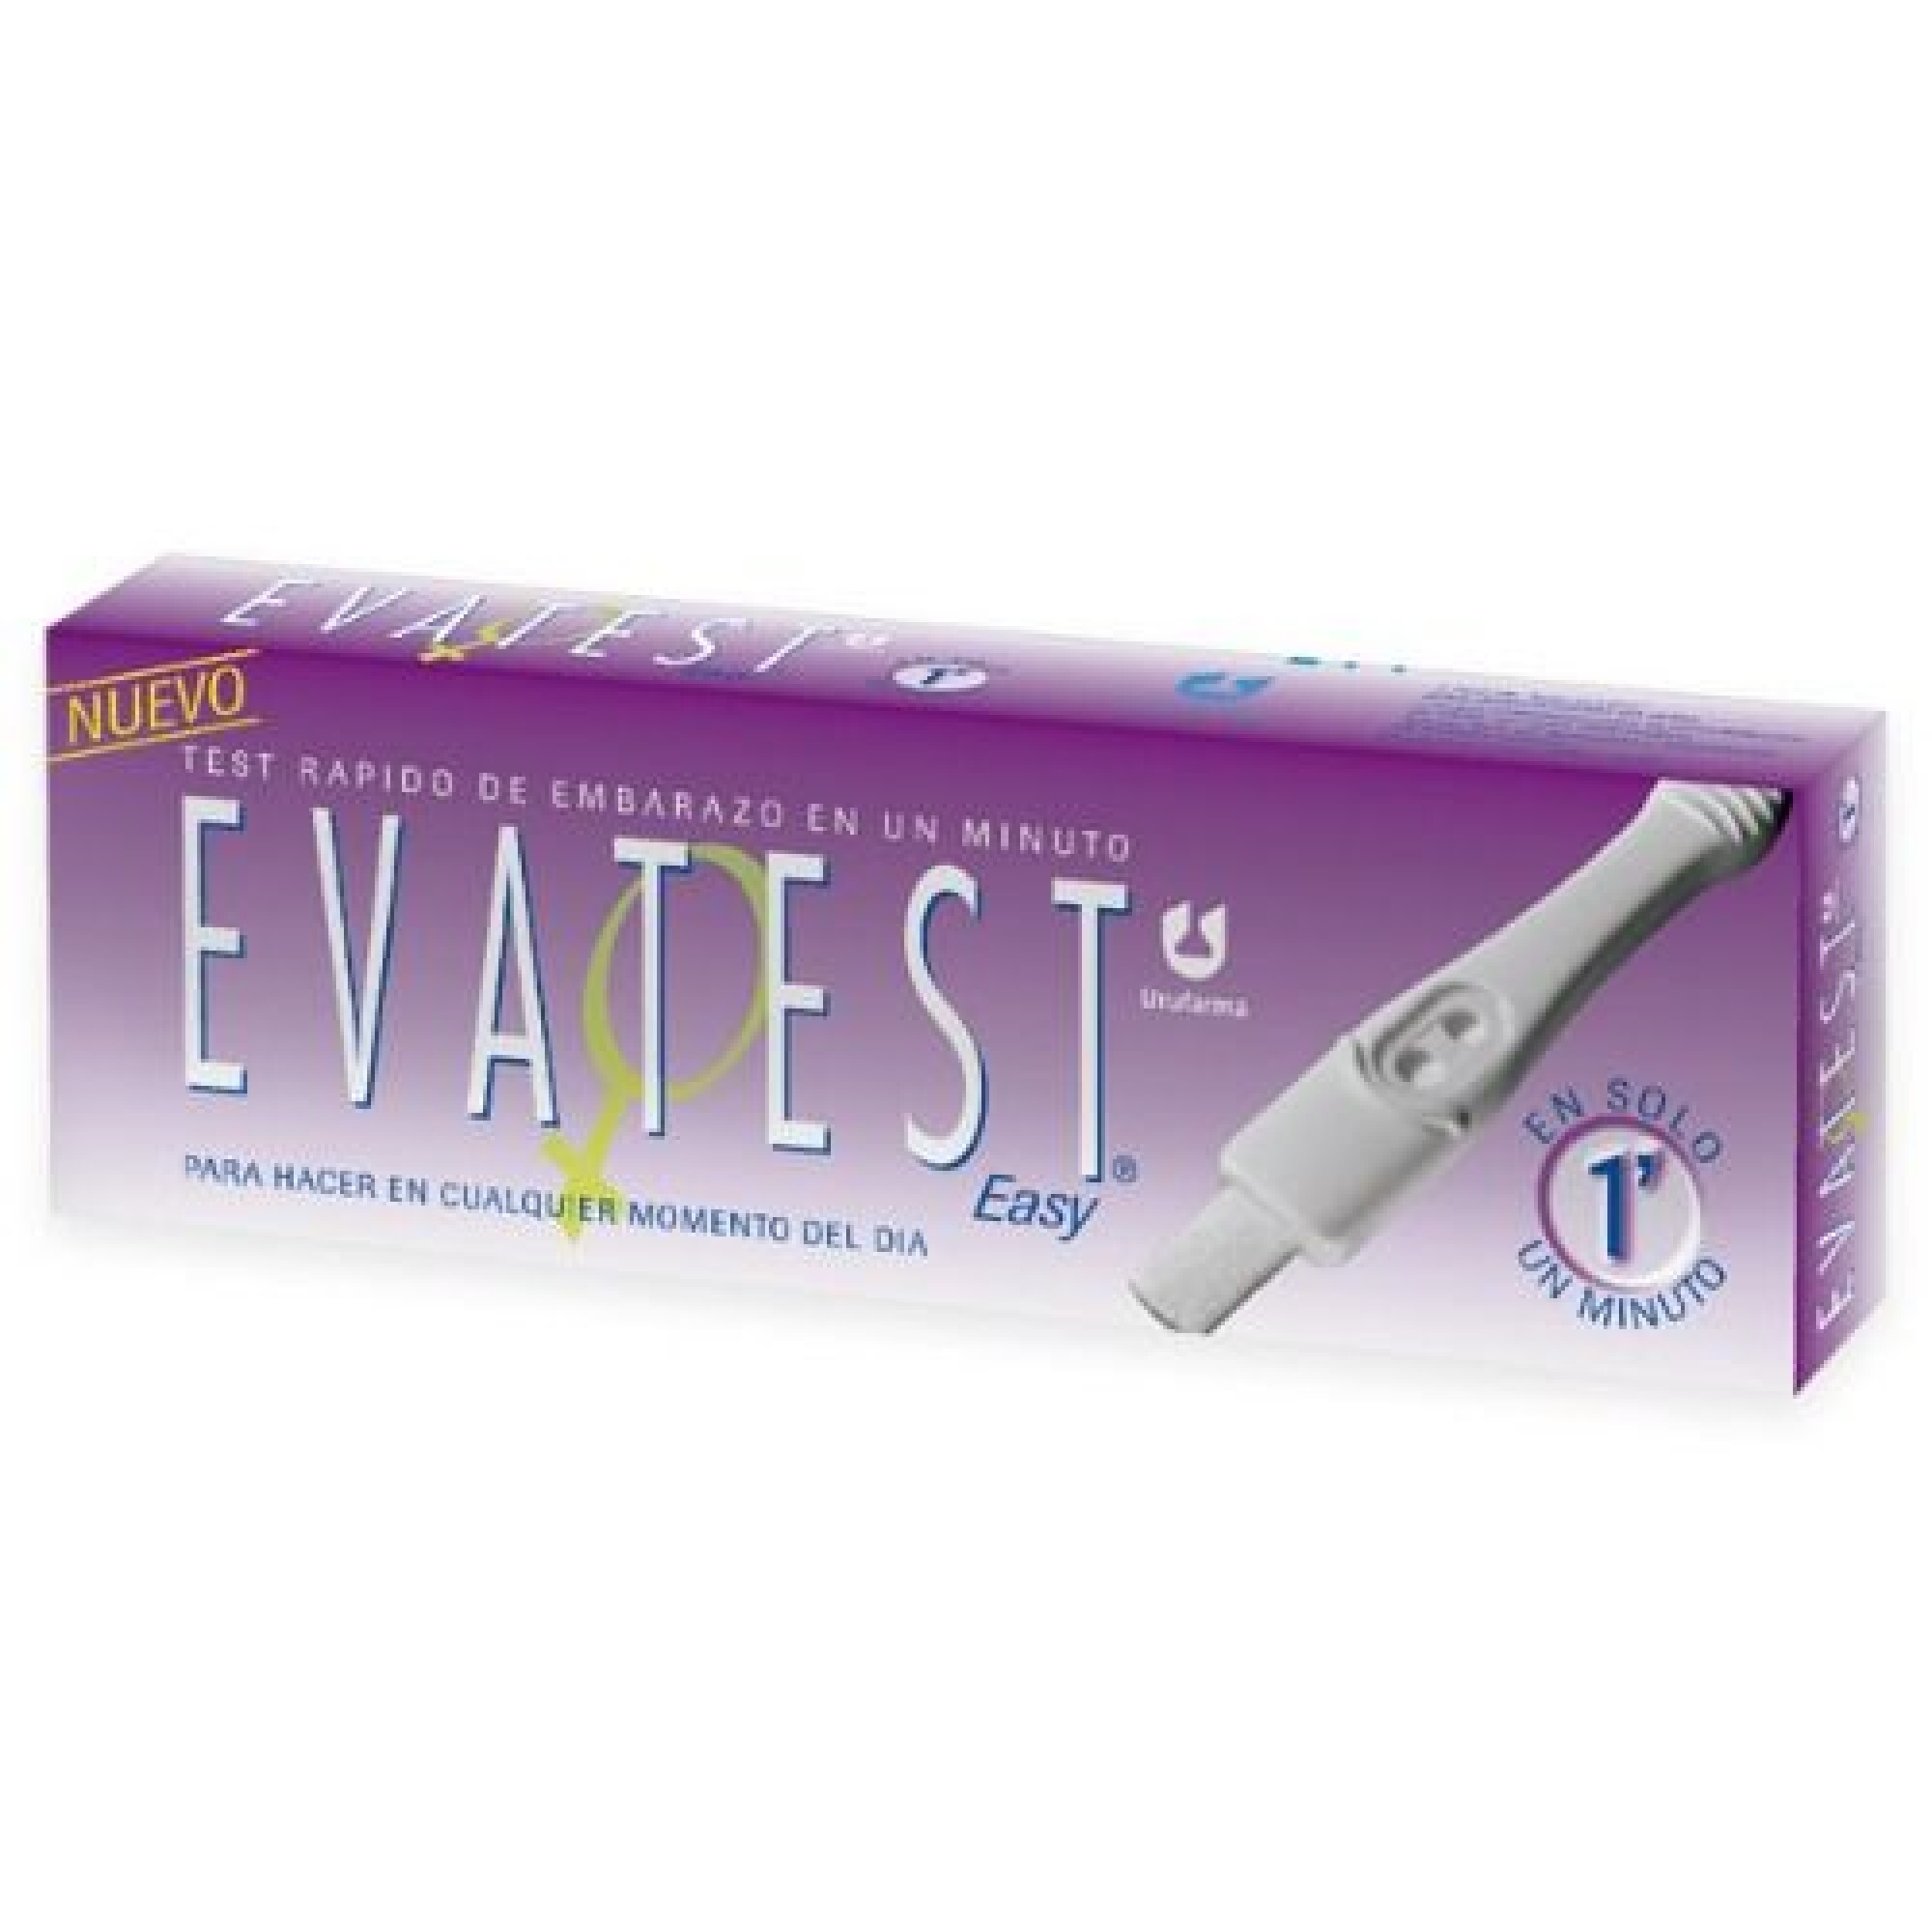 Test de Embarazo Evatest Easy